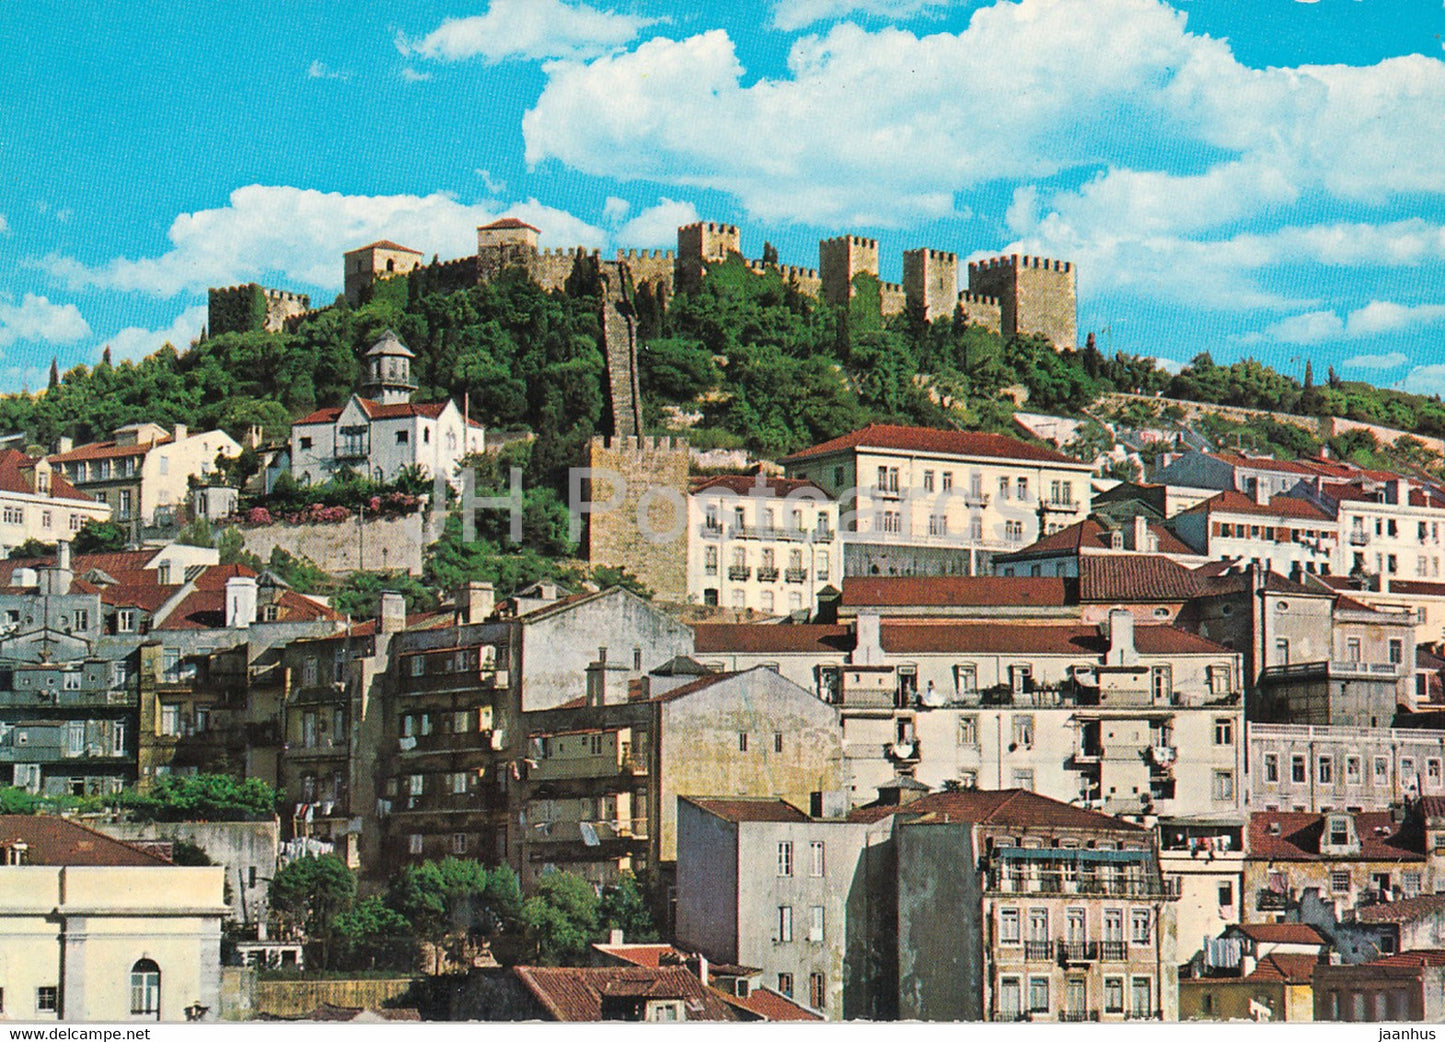 Lisbon - Lisboa - Castelo de S Jorge  - St George's Castle - 182 - Portugal - unused - JH Postcards